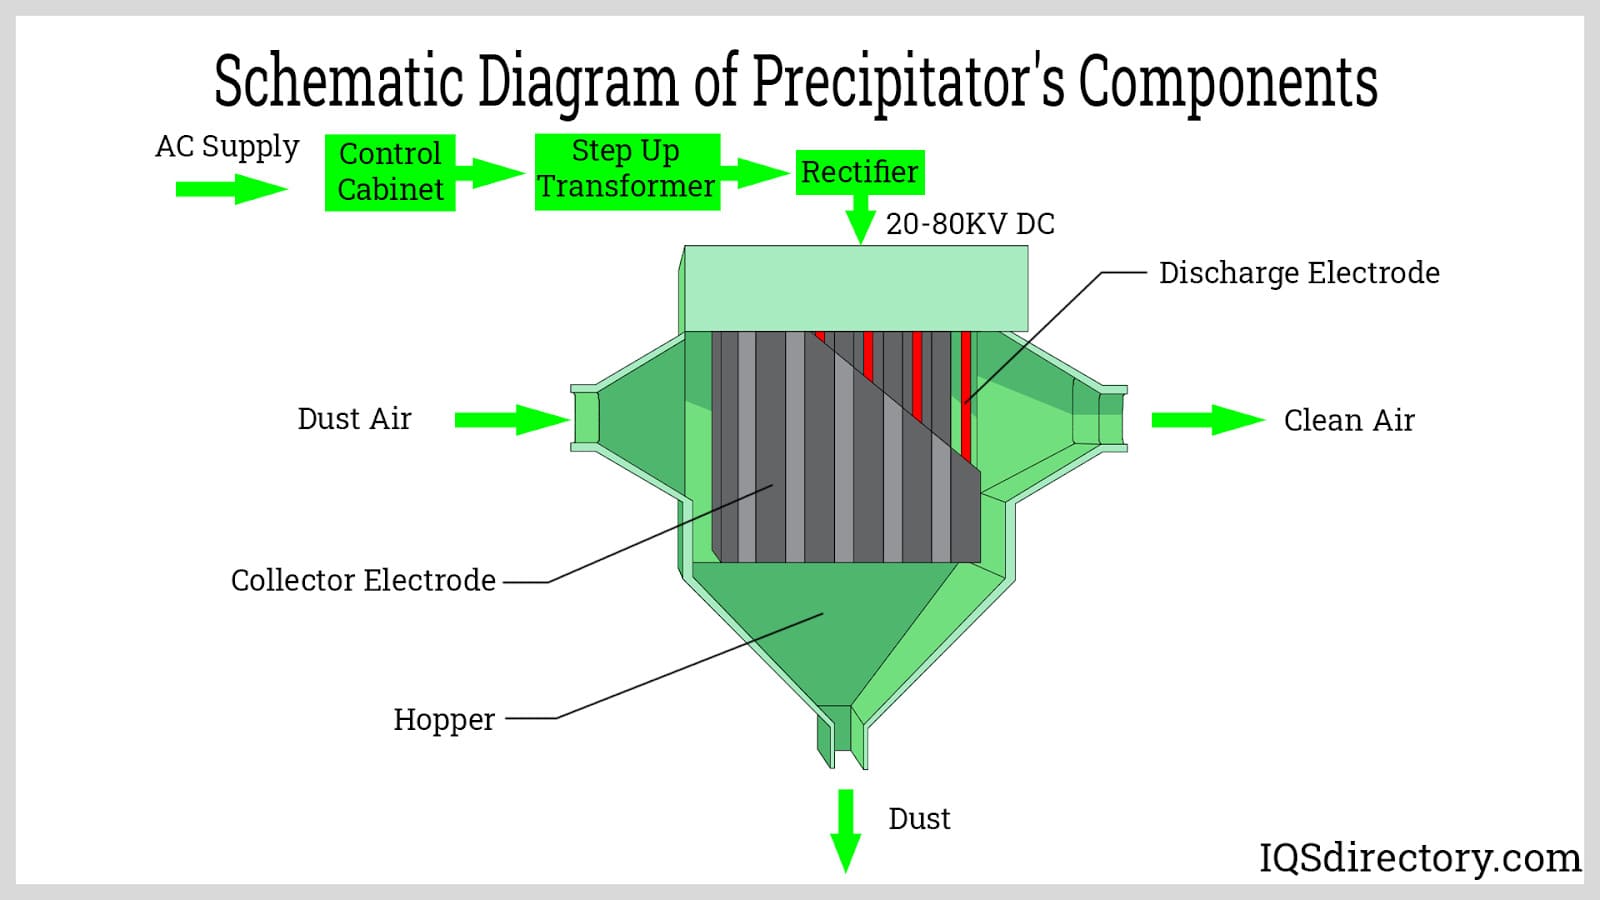 Schematic Diagram of Precipitator's Components